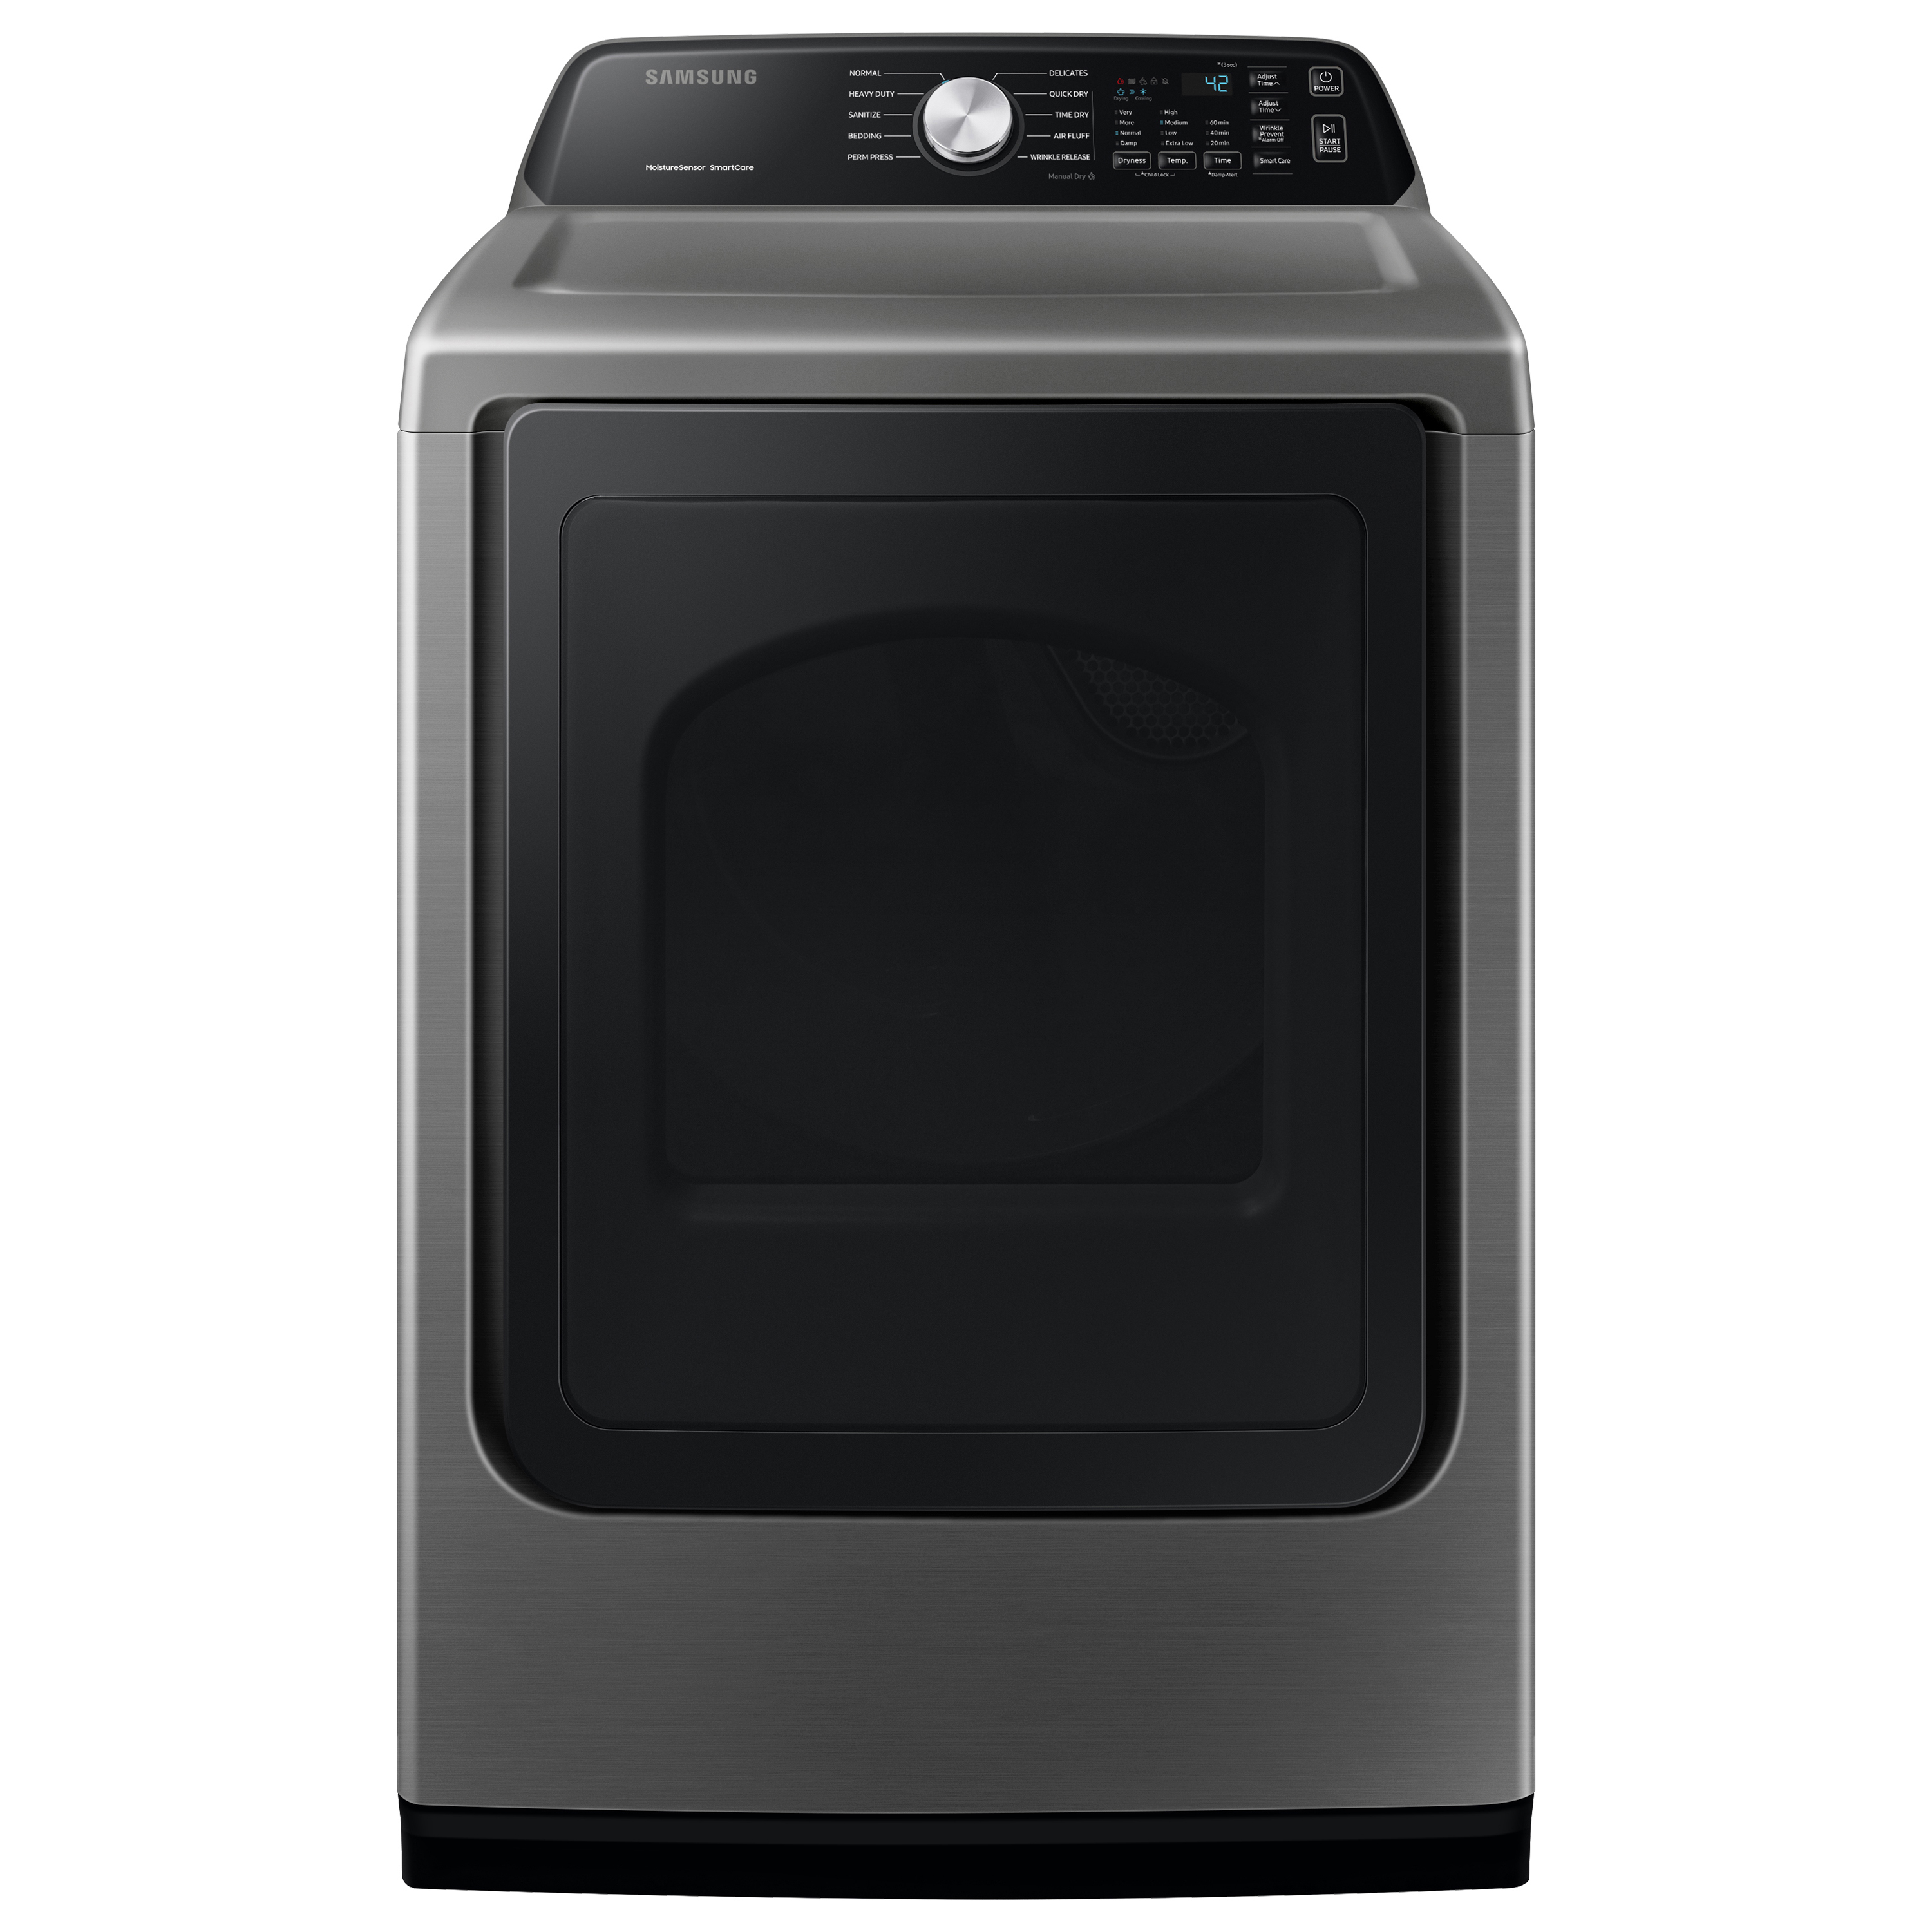 Samsung DVE45T3400P/A3 27" 7.4 Platinum Electric Dryer